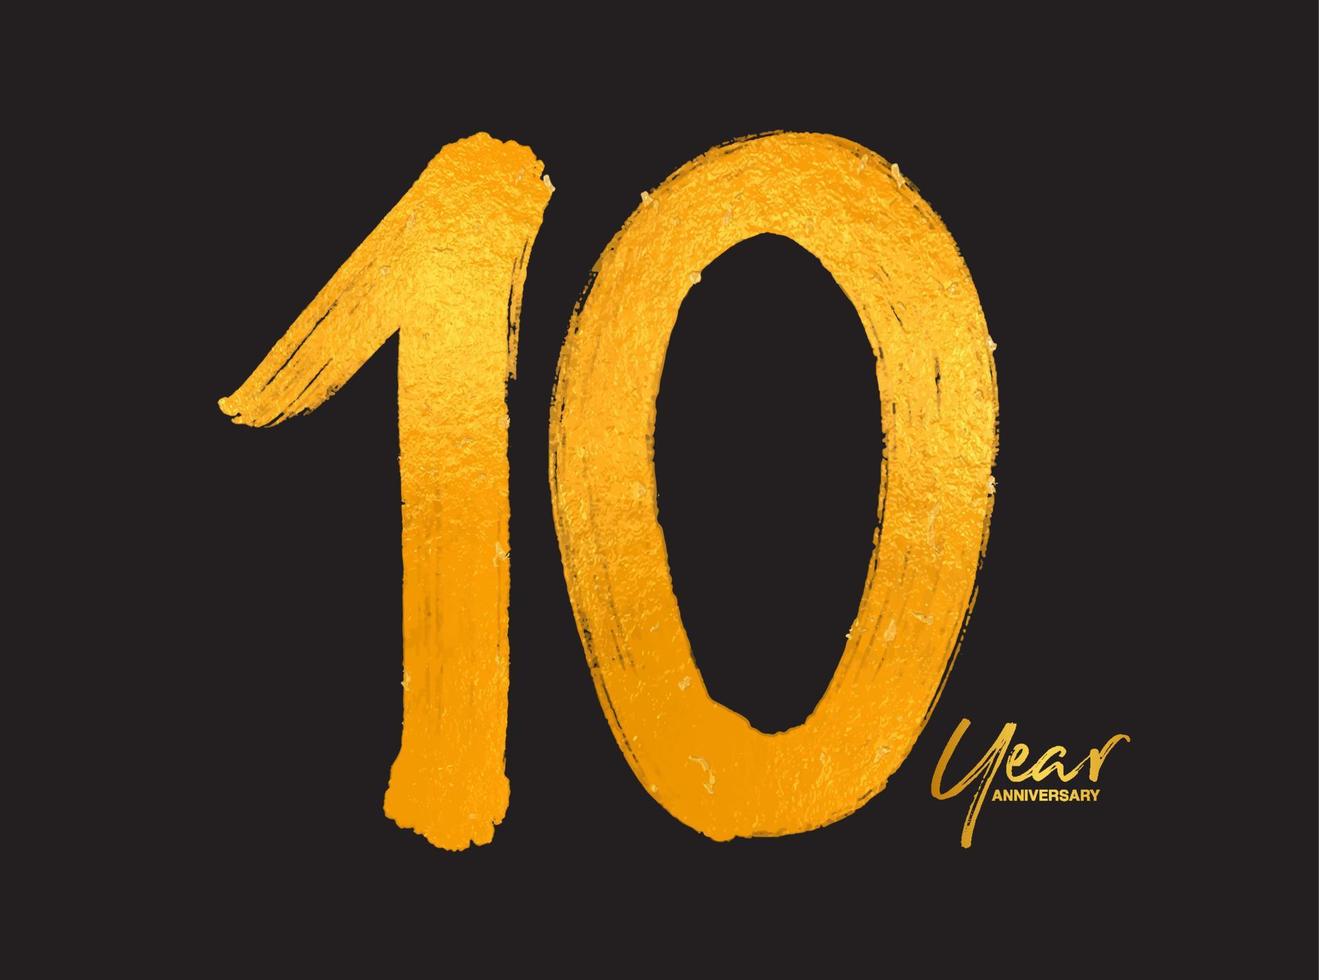 guld 10 års jubileumsfirande vektormall, 10 års logotypdesign, 10-årsdag, guldbokstäver siffror borstteckning handritad skiss, nummerlogotypdesign vektorillustration vektor